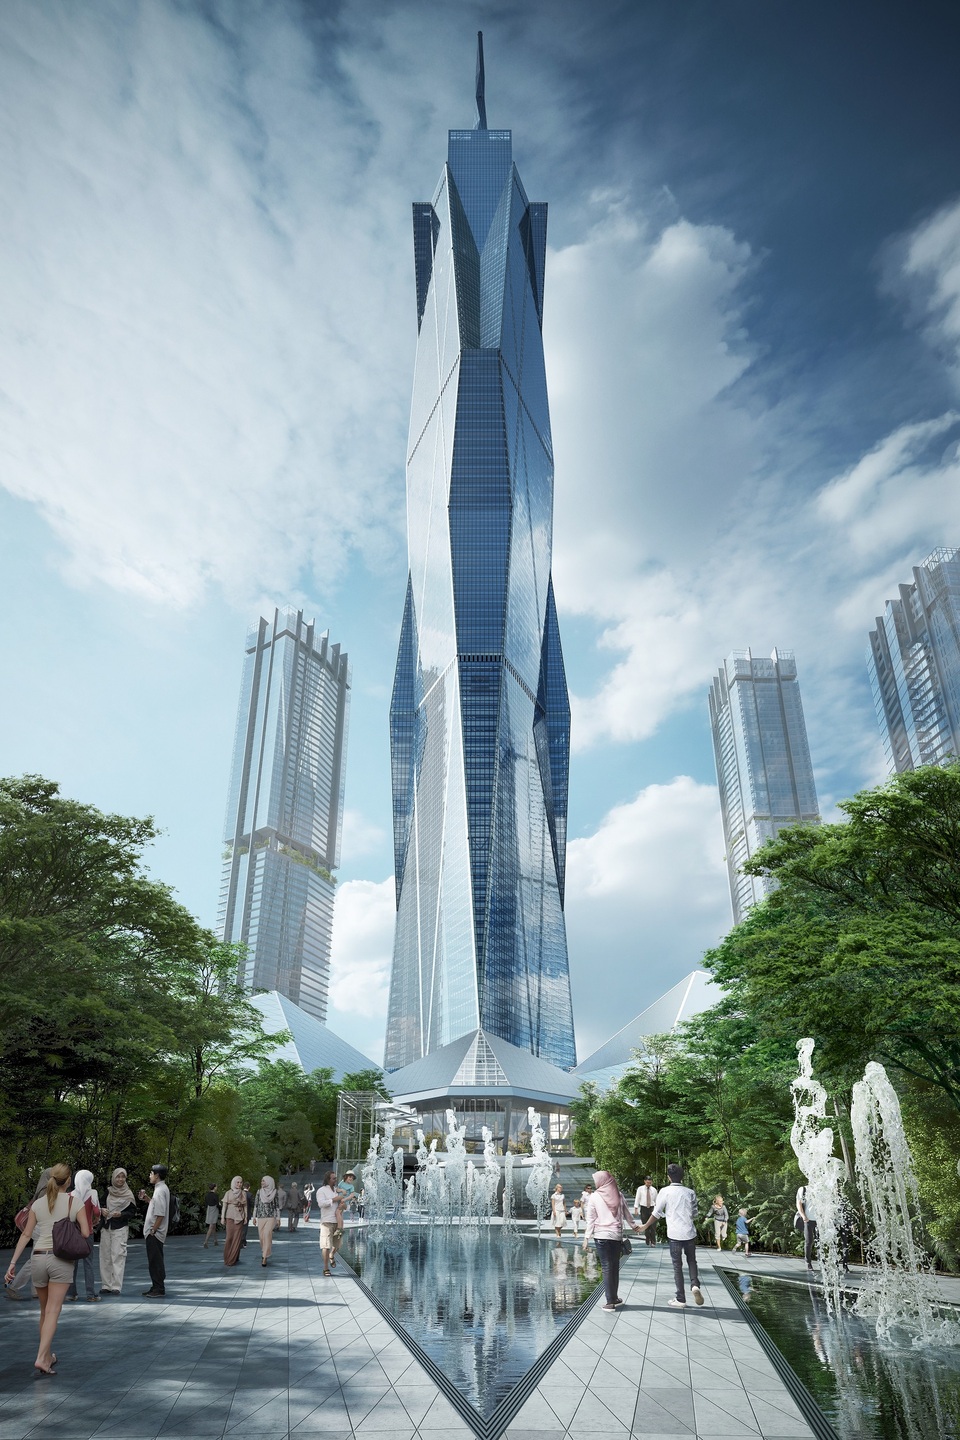 A BIM-alapú Archicad szoftver és a Nemetschek-csoport szakági szoftveres megoldásainak közös alkalmazásával tervezték  a118 emelet magas Merdeka tornyot Kuala Lumpurban. Kép forrása: MERDEKA 118 | FENDER KATSALIDIS | fkaustralia.com